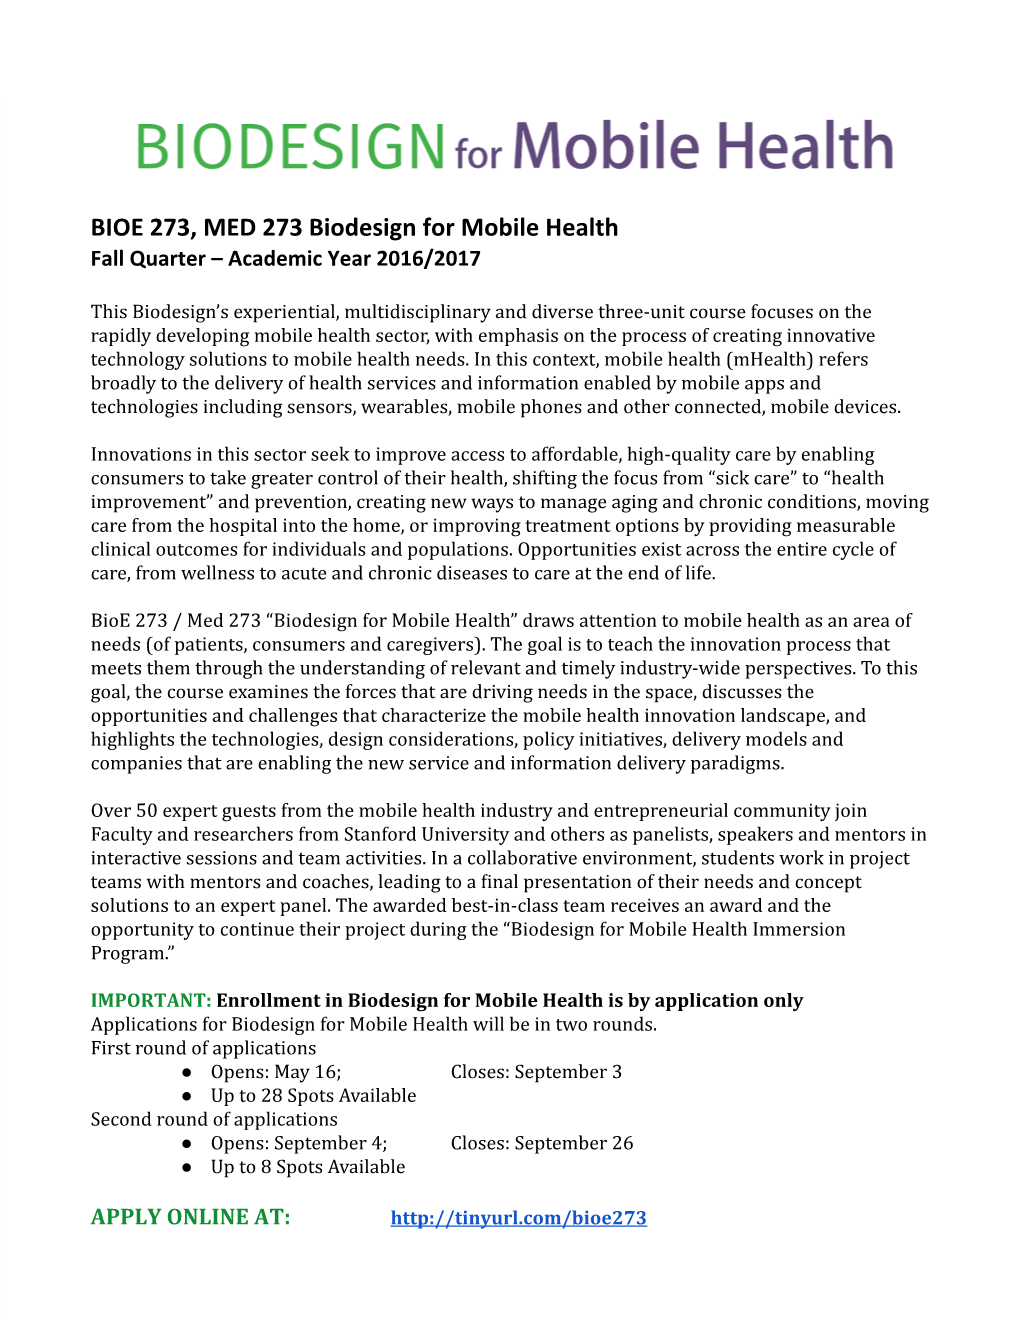 BIOE 273, MED 273 Biodesign for Mobile Health Fall Quarter – Academic Year 2016/2017